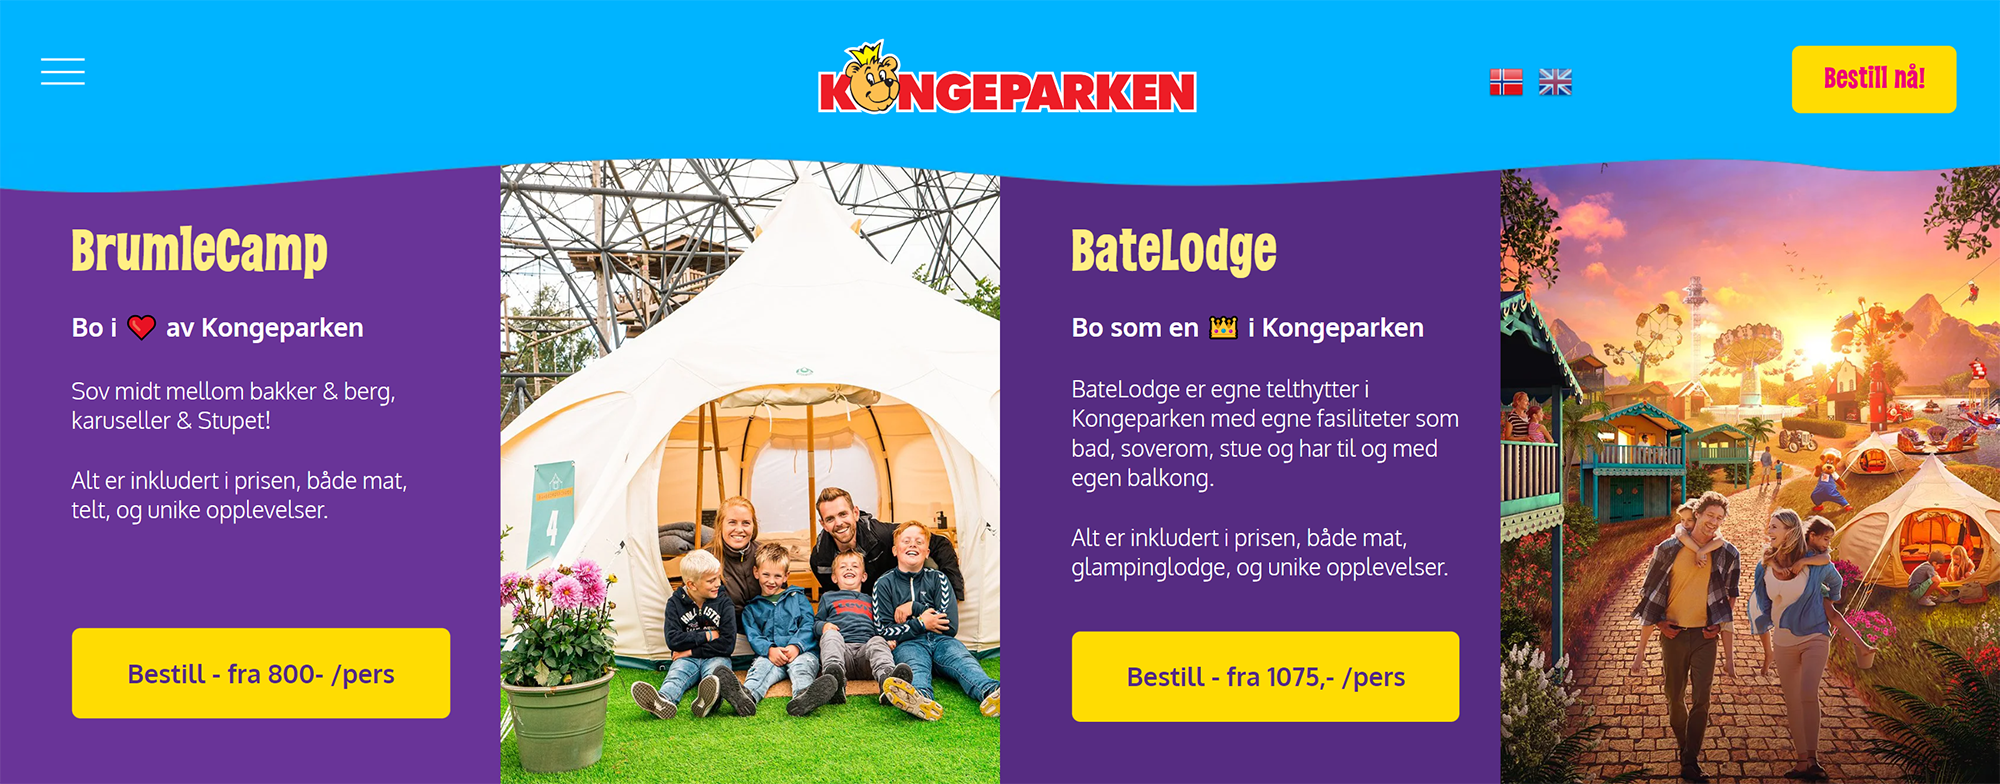 Мы cнимали палатку «стандарт» в Kongeparken. Источник: kongeparken.no